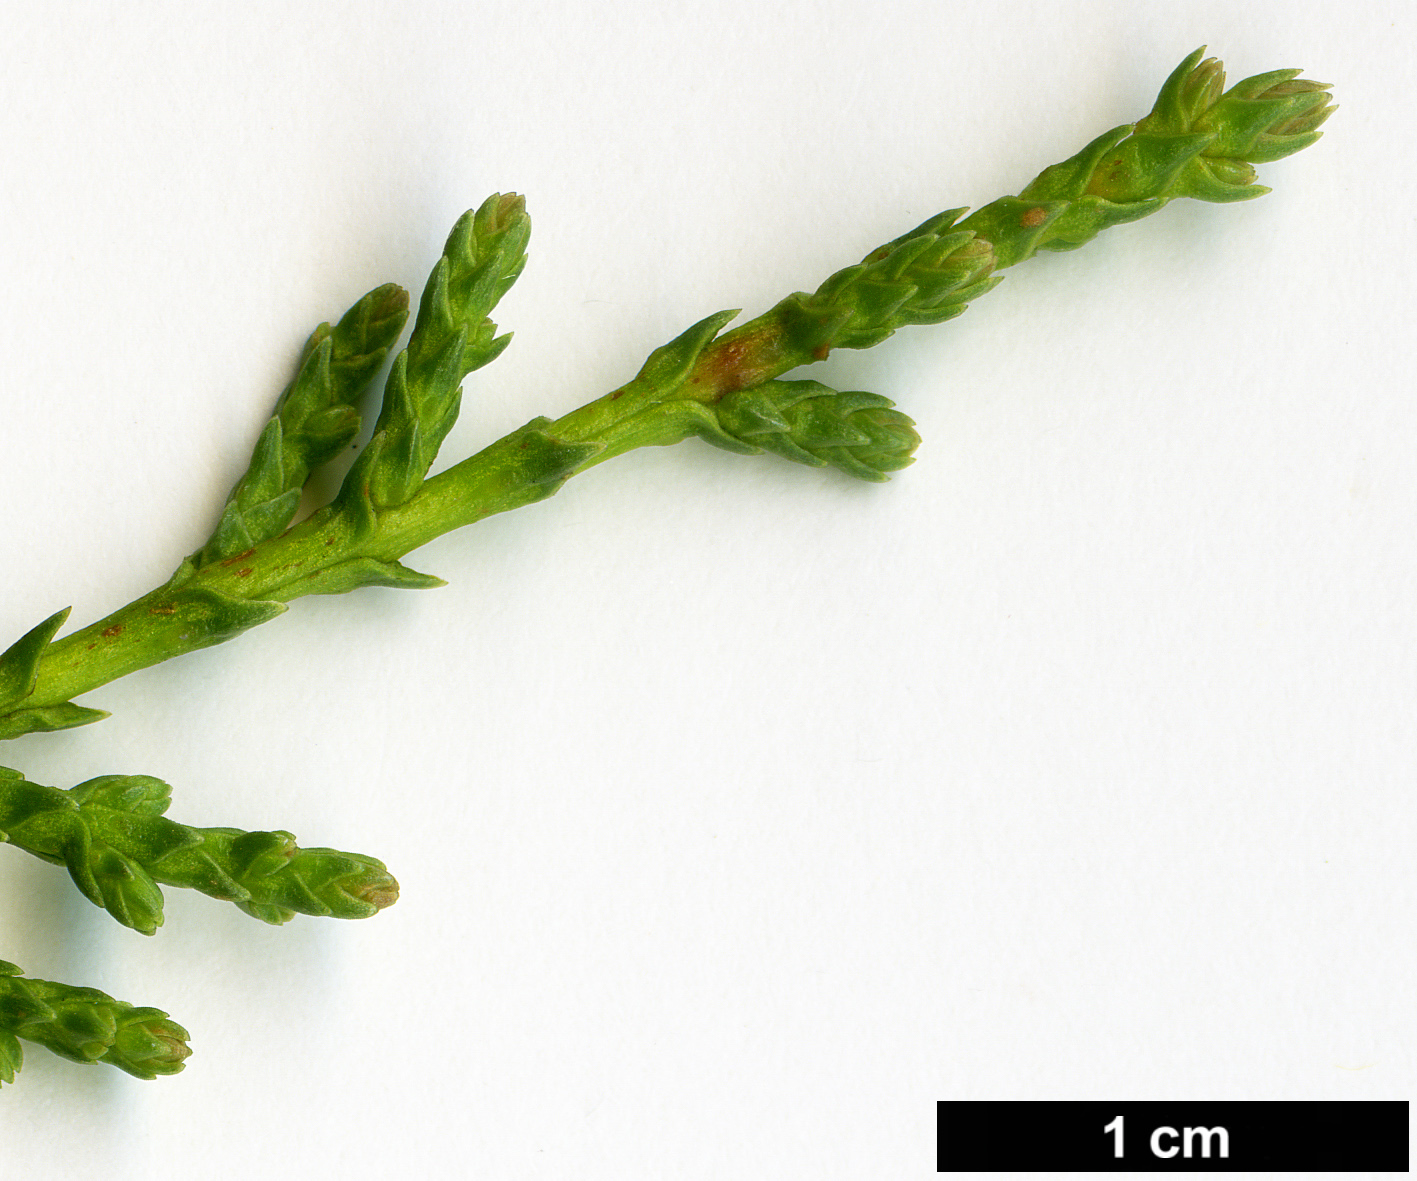 High resolution image: Family: Cupressaceae - Genus: Cupressus - Taxon: sargentii